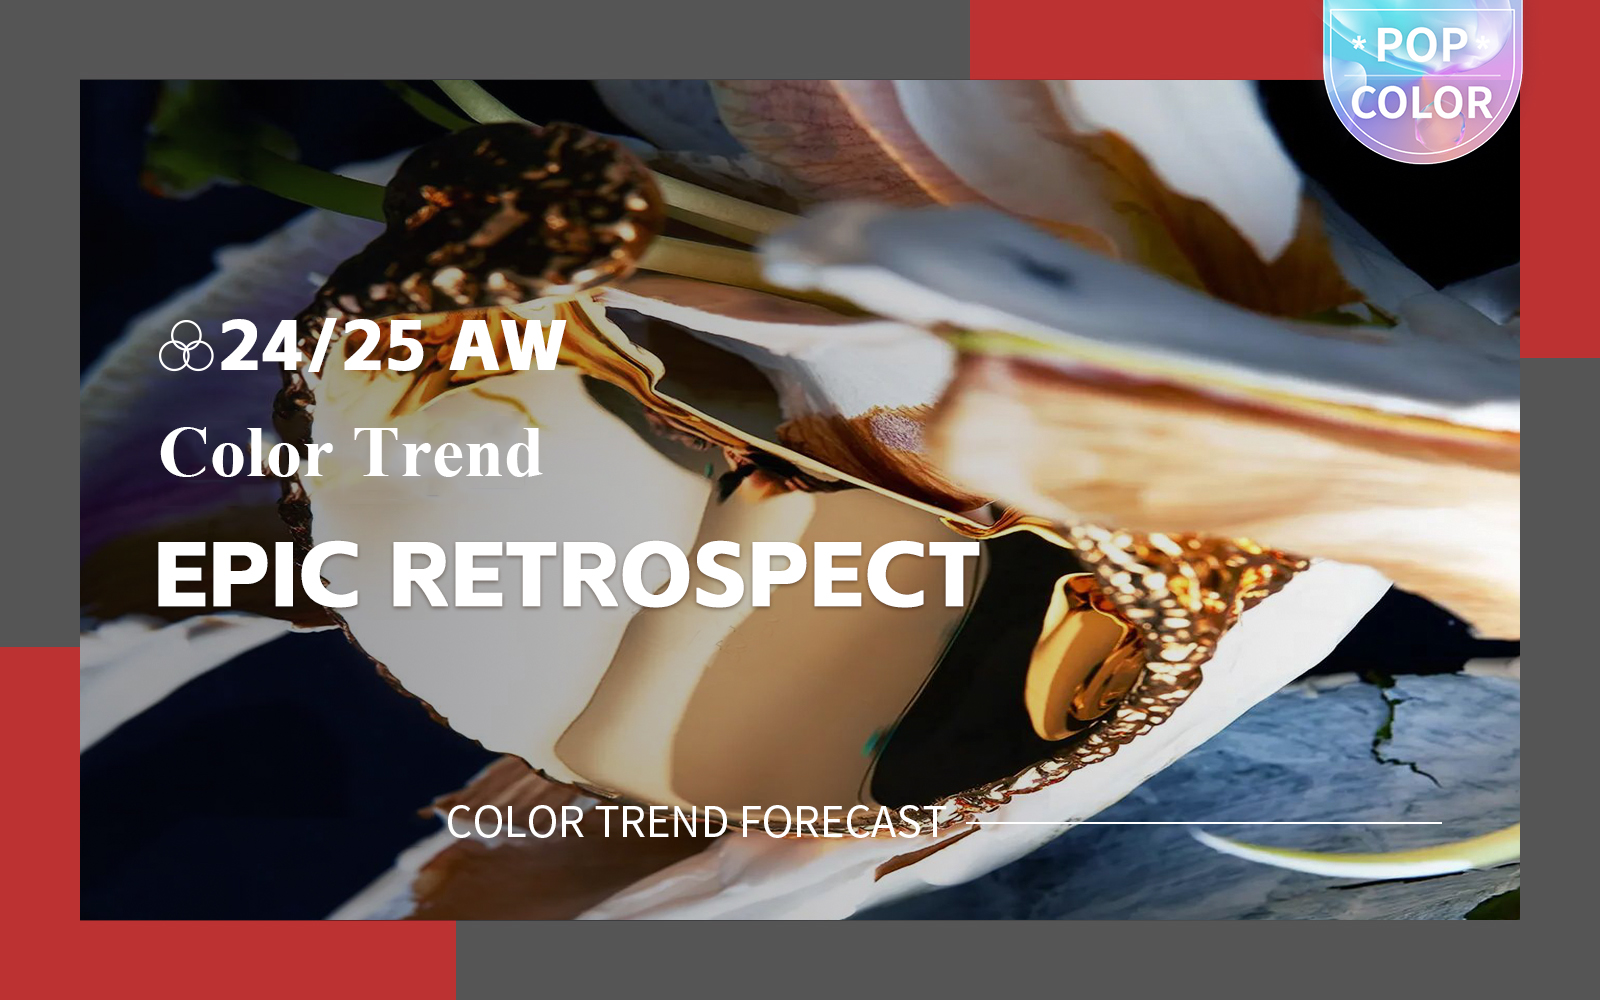 Epic Retrospect -- A/W 24/25 Color Trend Forecast